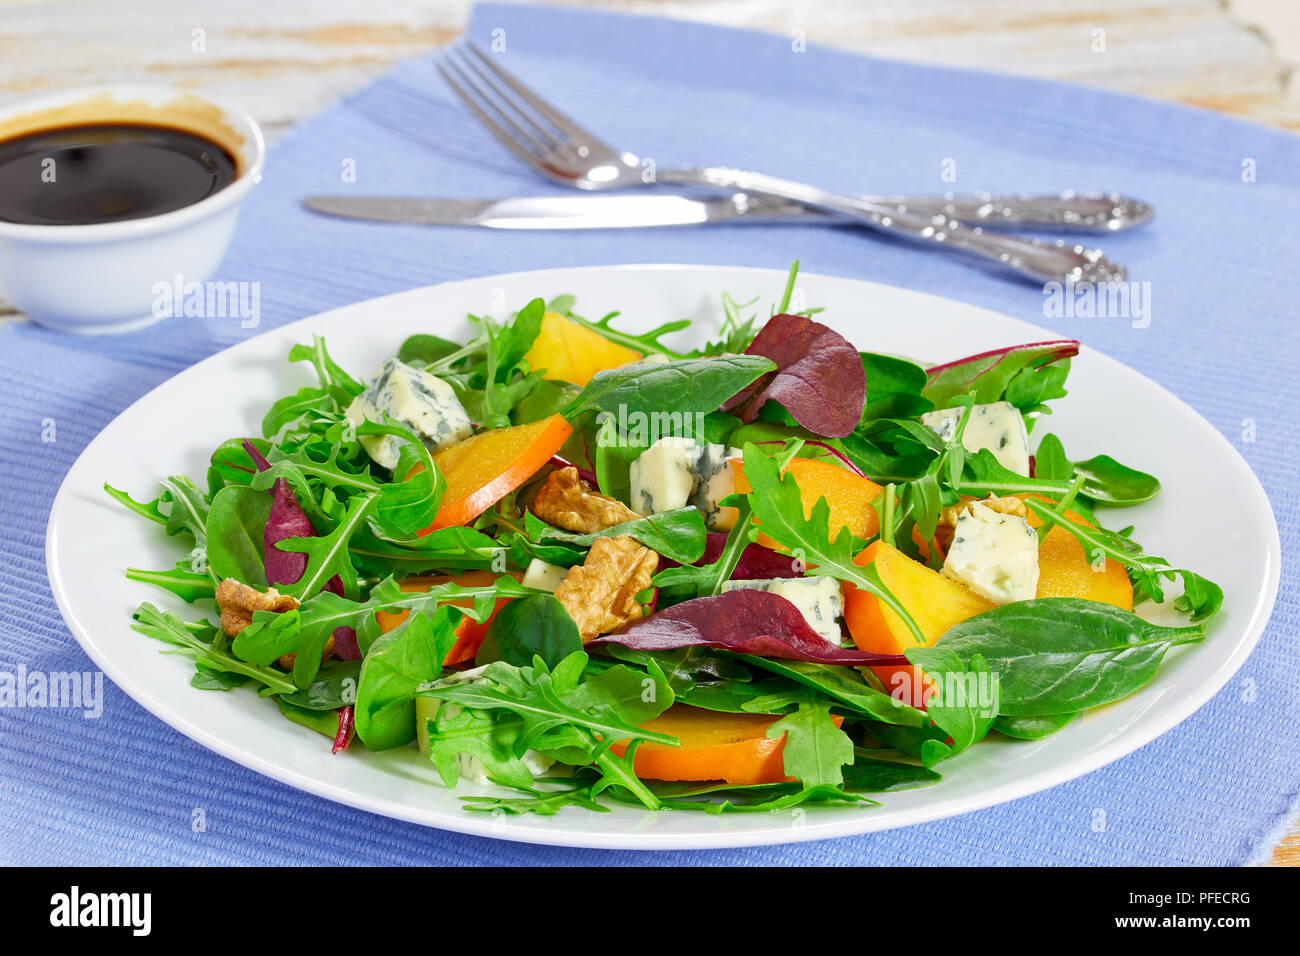 Kaki, fromage bleu, roquette, jeunes épinards, laitue et noix délicieuse salade sur assiette blanche sur tapis de table avec la fourchette, le couteau et le vinaigre dres Banque D'Images